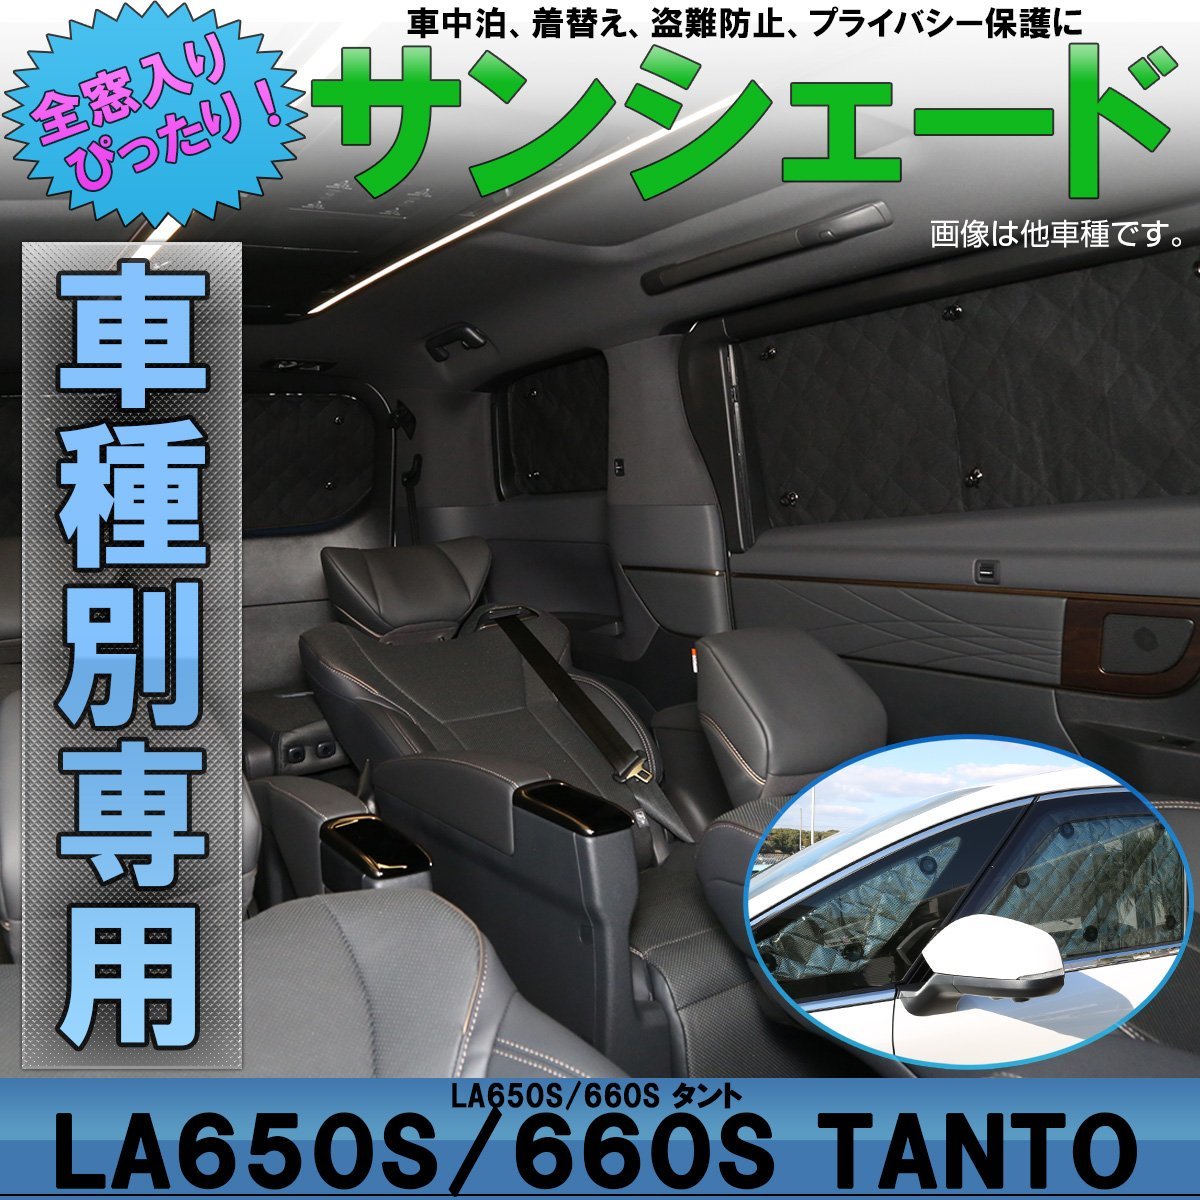 LA650S LA660S タント / タントカスタム サンシェード 専用設計 全窓用セット 5層構造 ブラックメッシュ 車中泊 プライバシー保護に S-827の画像1